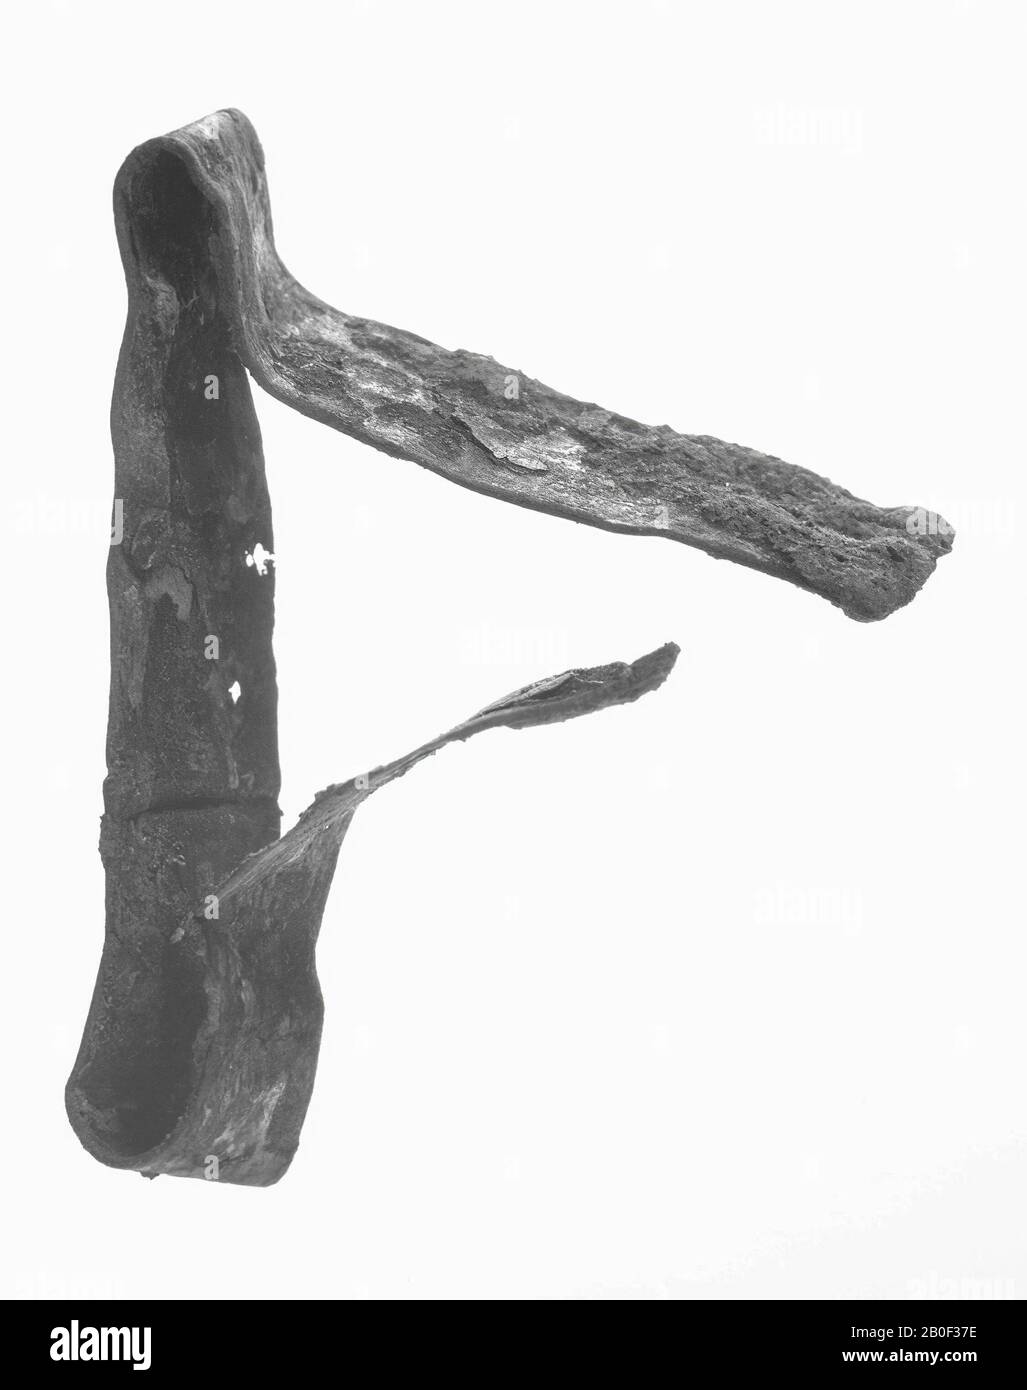 Schwerter aus Bronze, Schlagblech, Metall, Bronze, 4,9 x 6,7 cm, roman 40-250, Niederlande, Südholland, Katwijk, Valkenburg Stockfoto